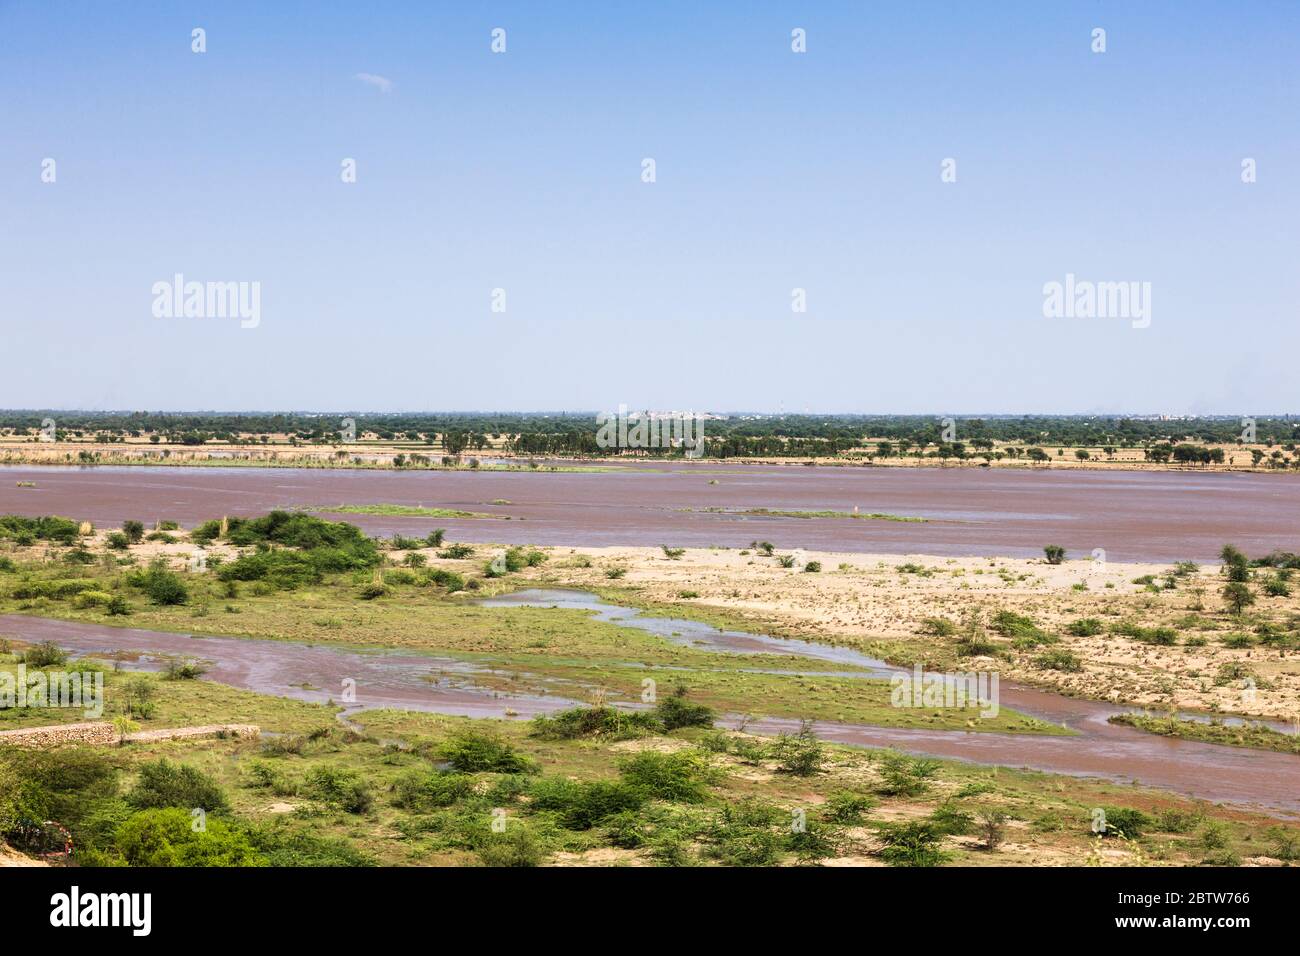 Jhelum River, Alexander der große, Schlacht der Hydaspes, Indischer König Poros, Jalalpur, Jhelum District, Punjab Provinz, Pakistan, Südasien, Asien Stockfoto